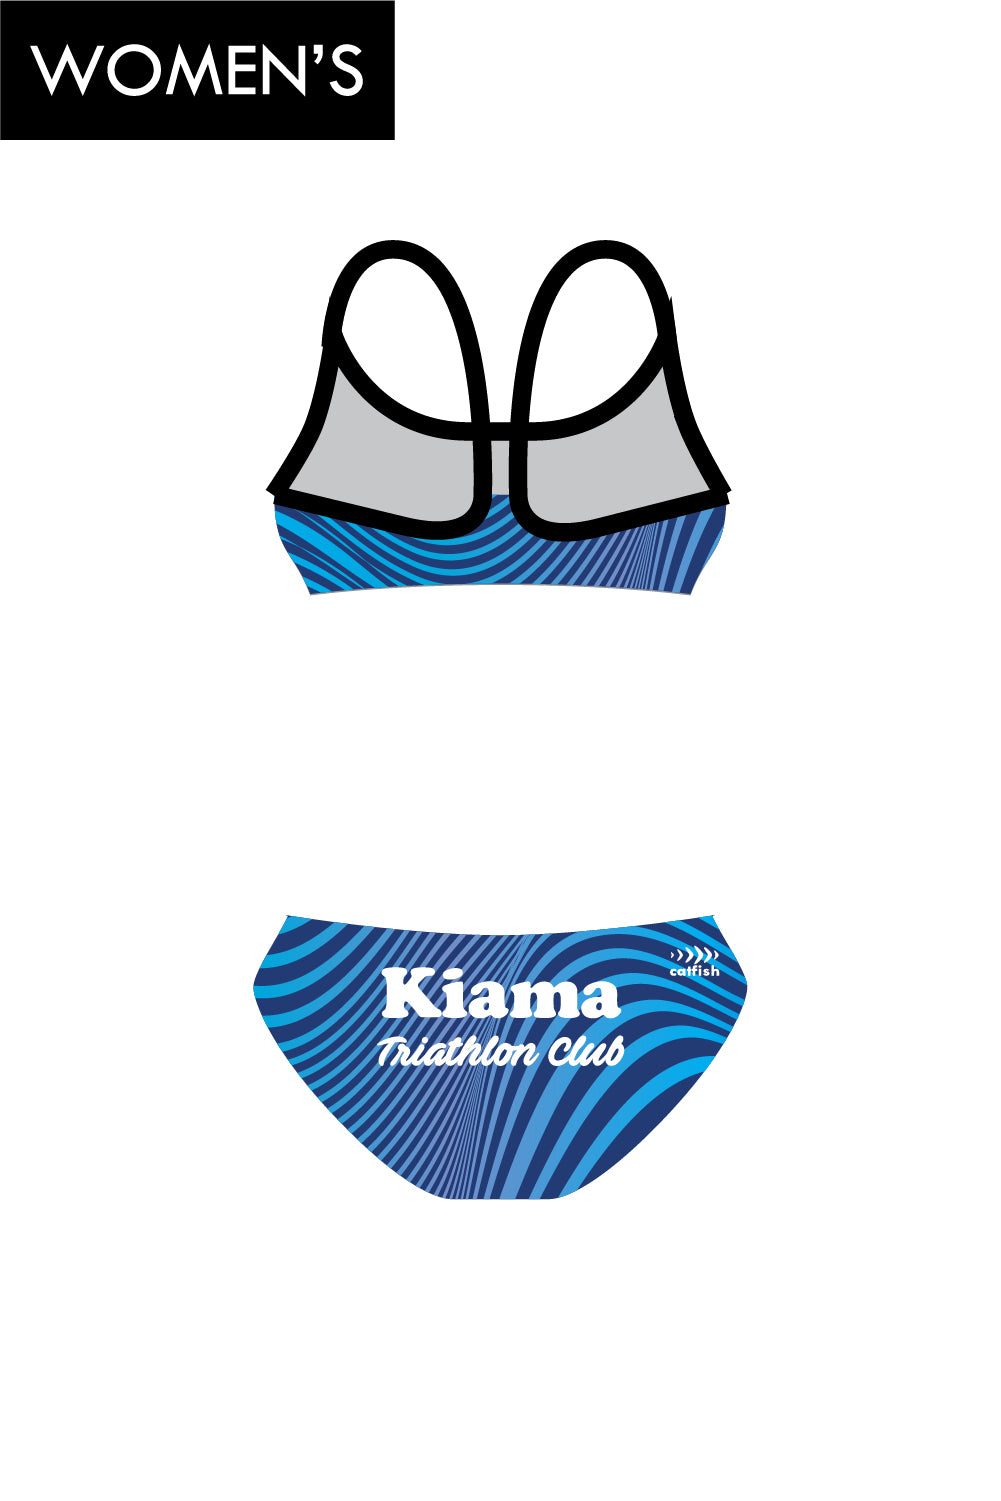 KTC Women's Scoop Bikini